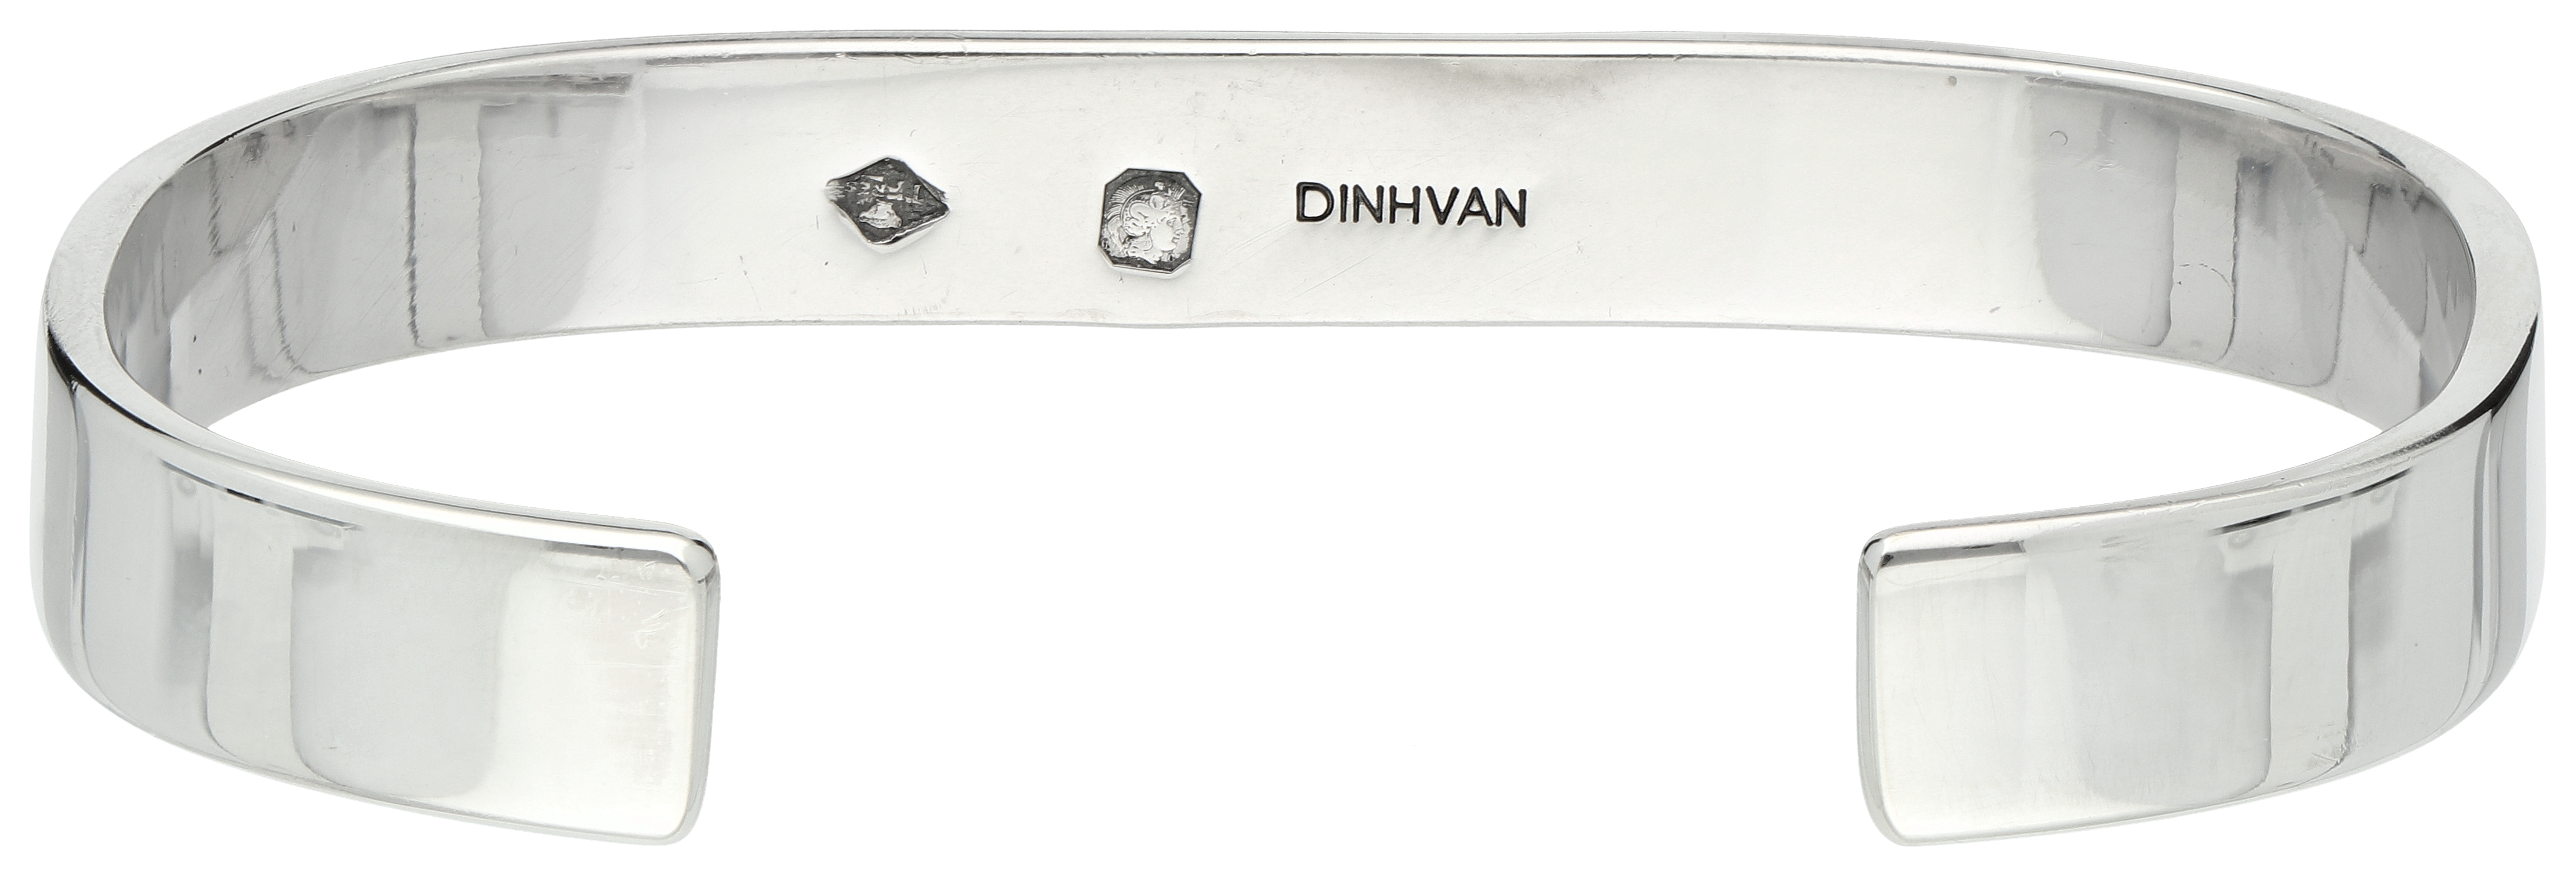 No Reserve - Dinh Van Sterling silver cuff bracelet. - Image 2 of 3